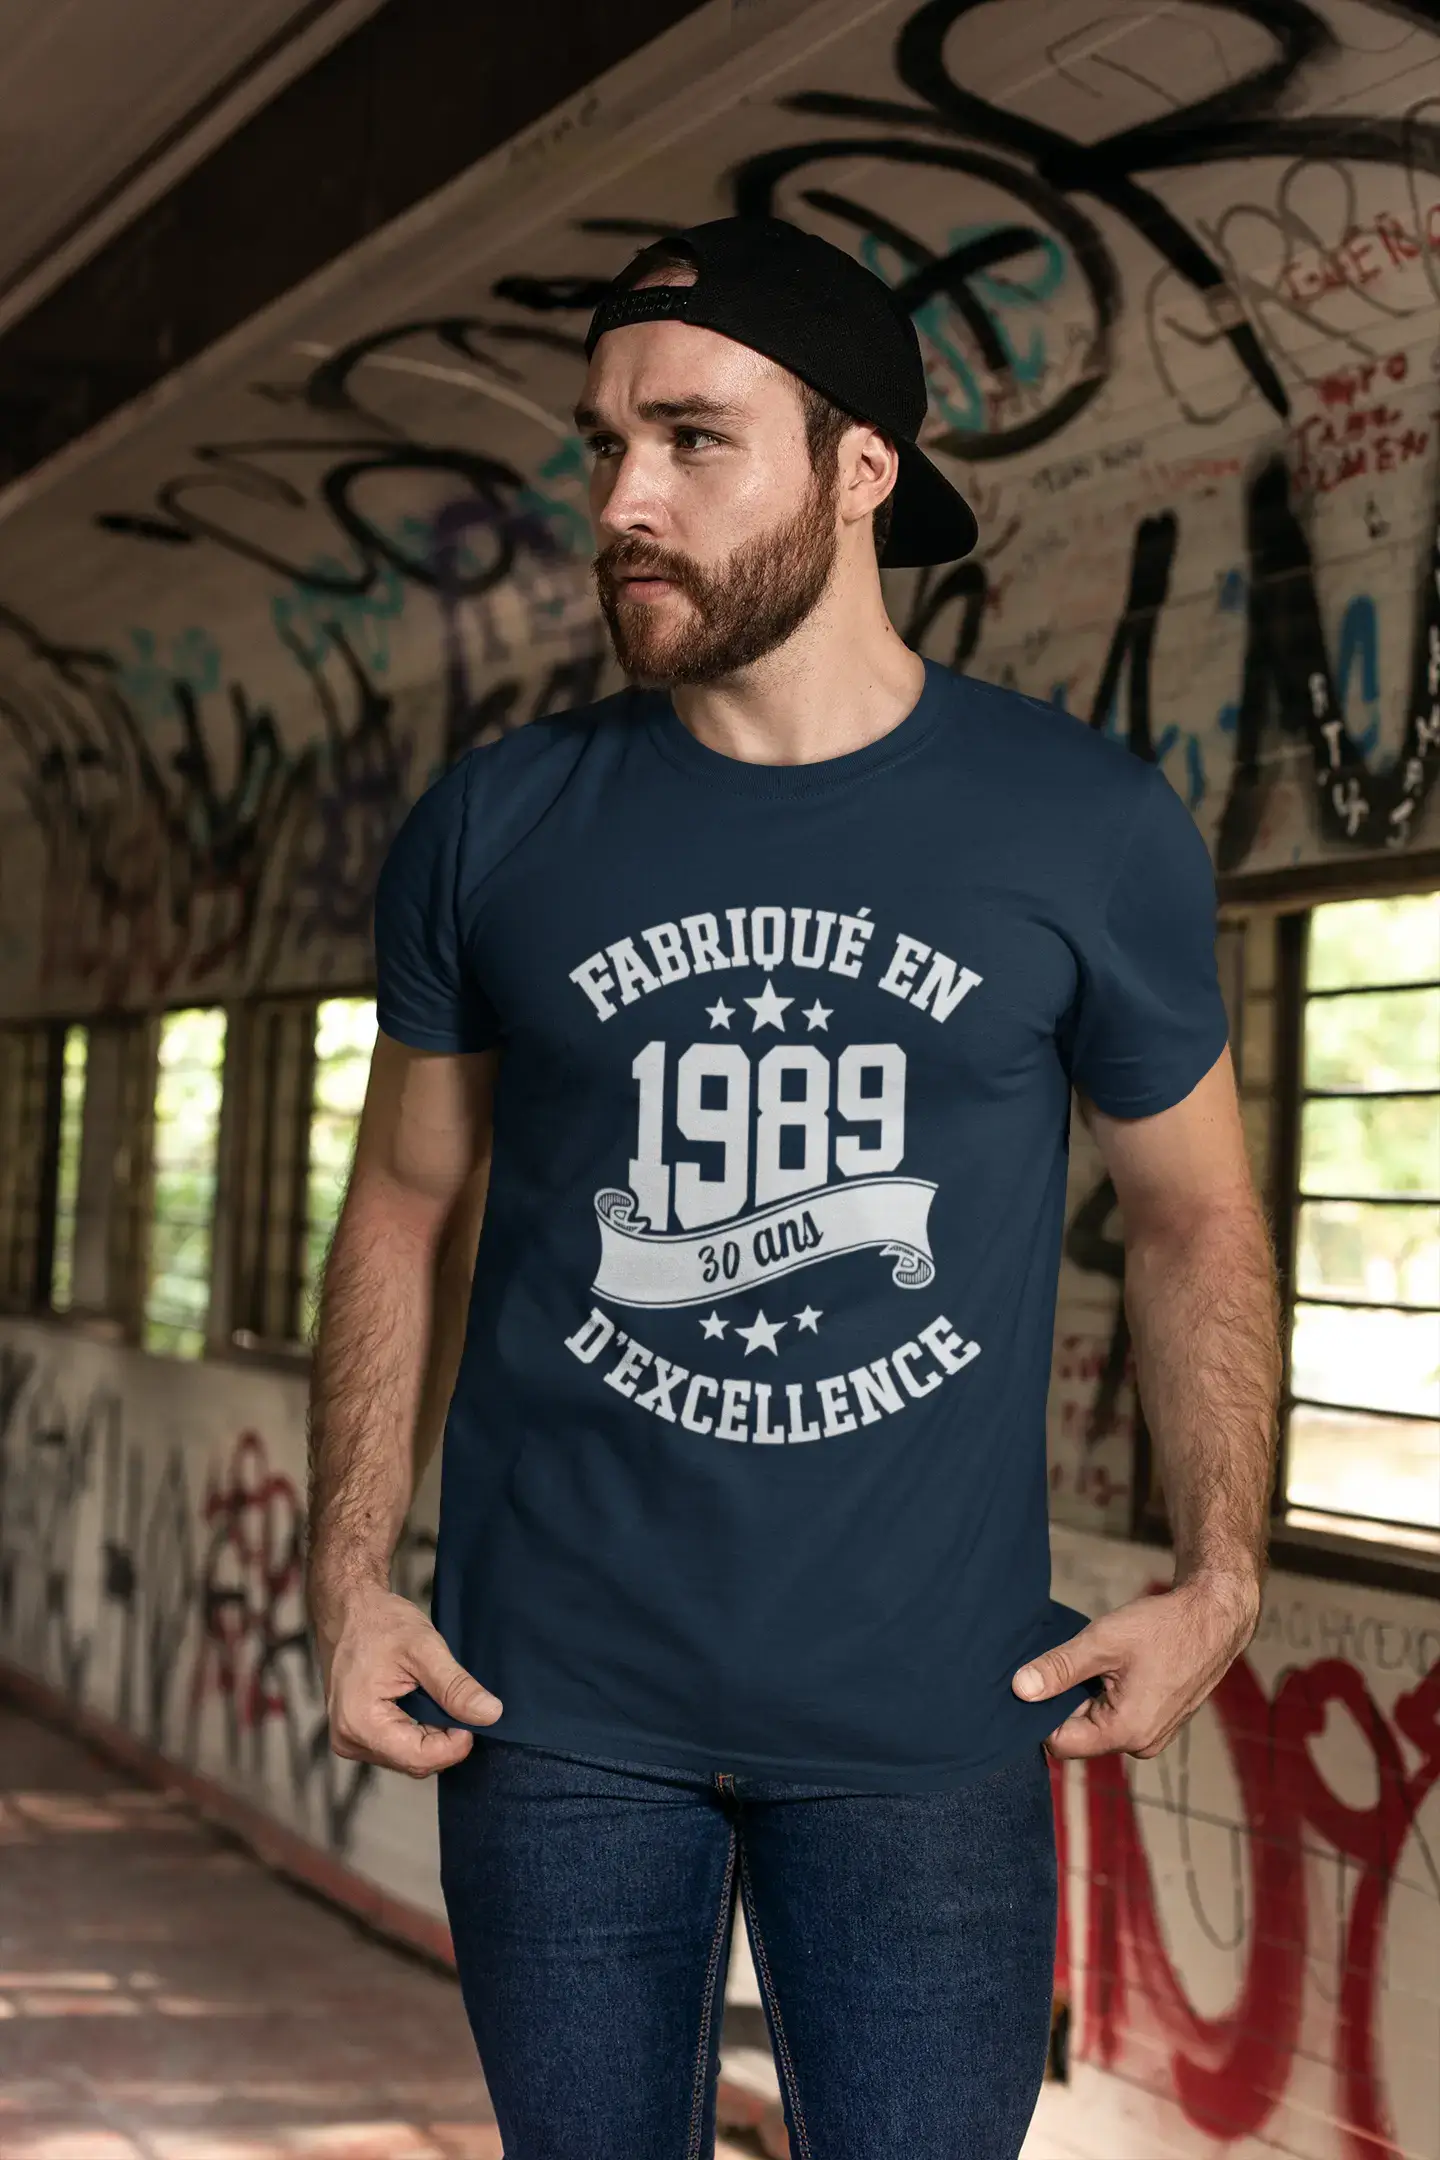 ULTRABASIC – Hergestellt im Jahr 1989, 30 Jahre alt. Geniales weißes Unisex-T-Shirt